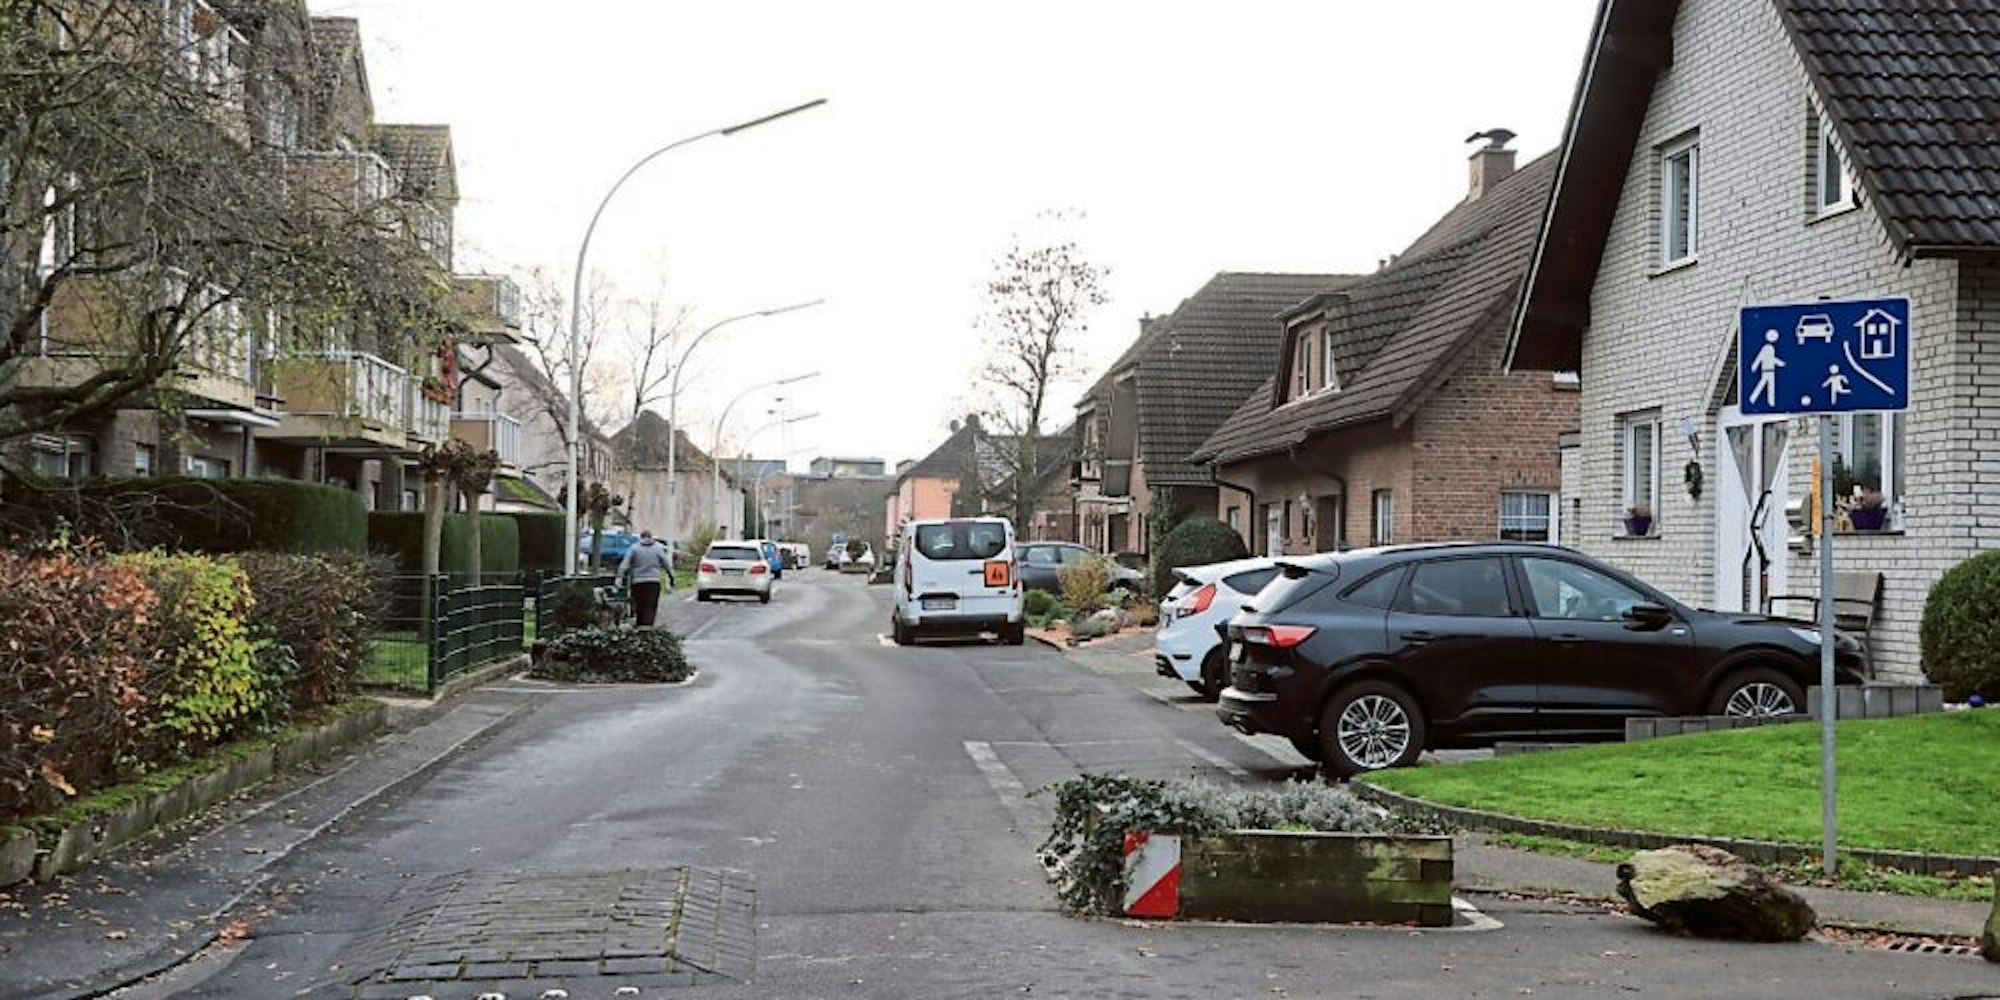 Die Kurhausstraße in Habbelrath gilt als Spielstraße. Trotzdem wird sie vom Durchgangsverkehr genutzt. Anwohner klagen über Raser.